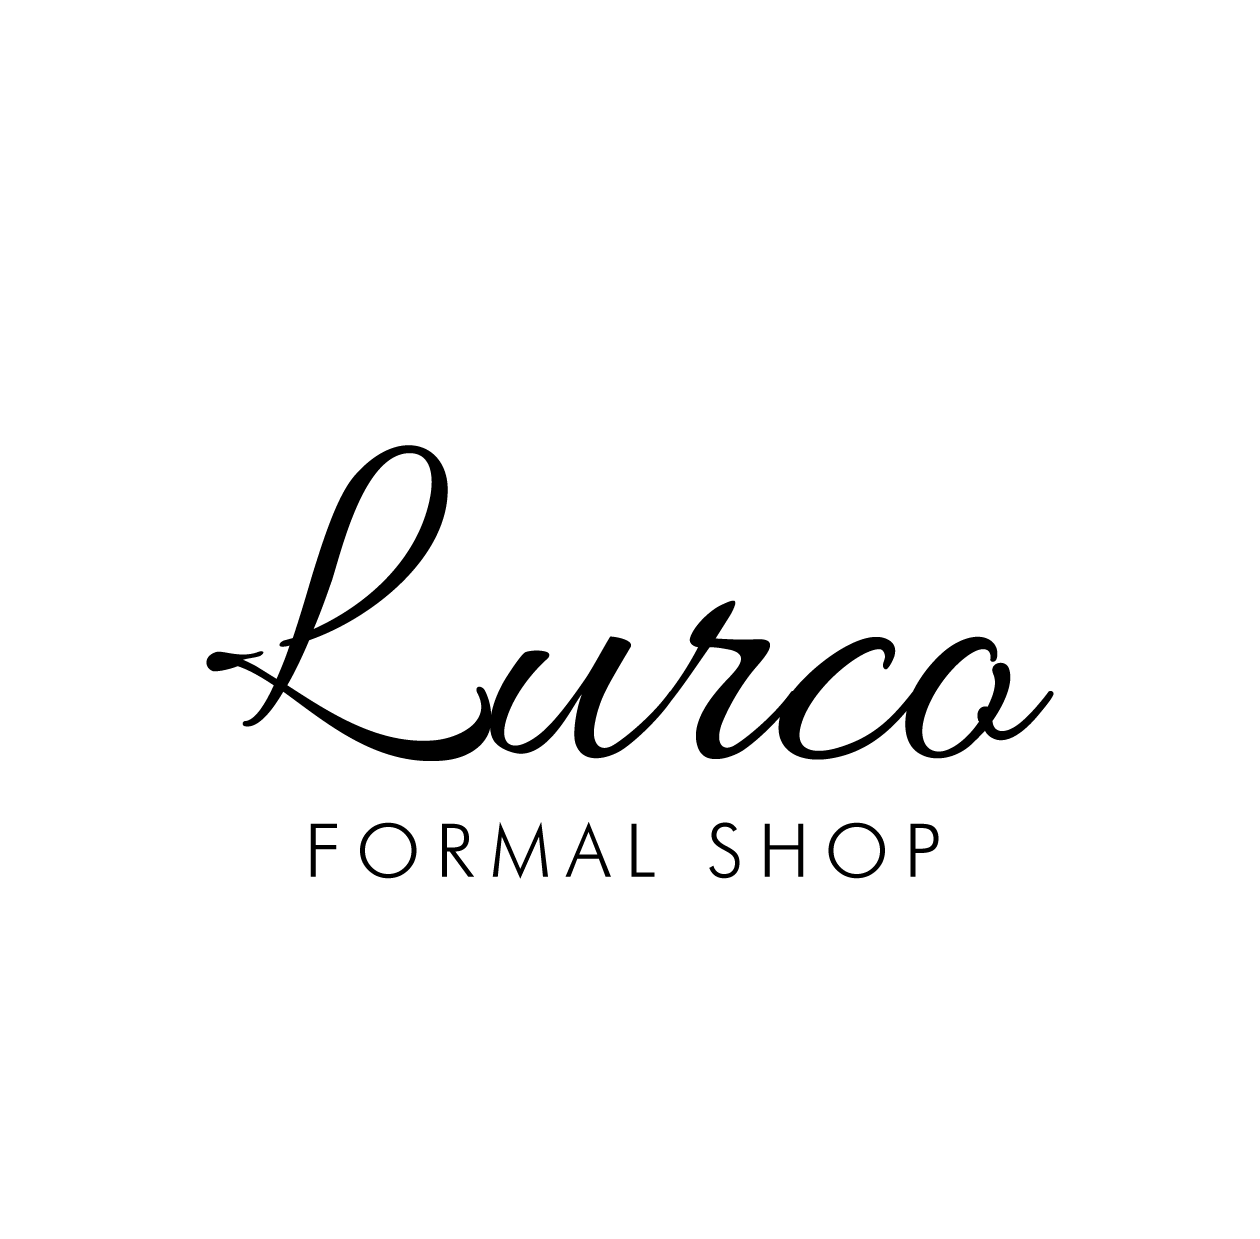 ルルコブラックフォーマルのロゴ